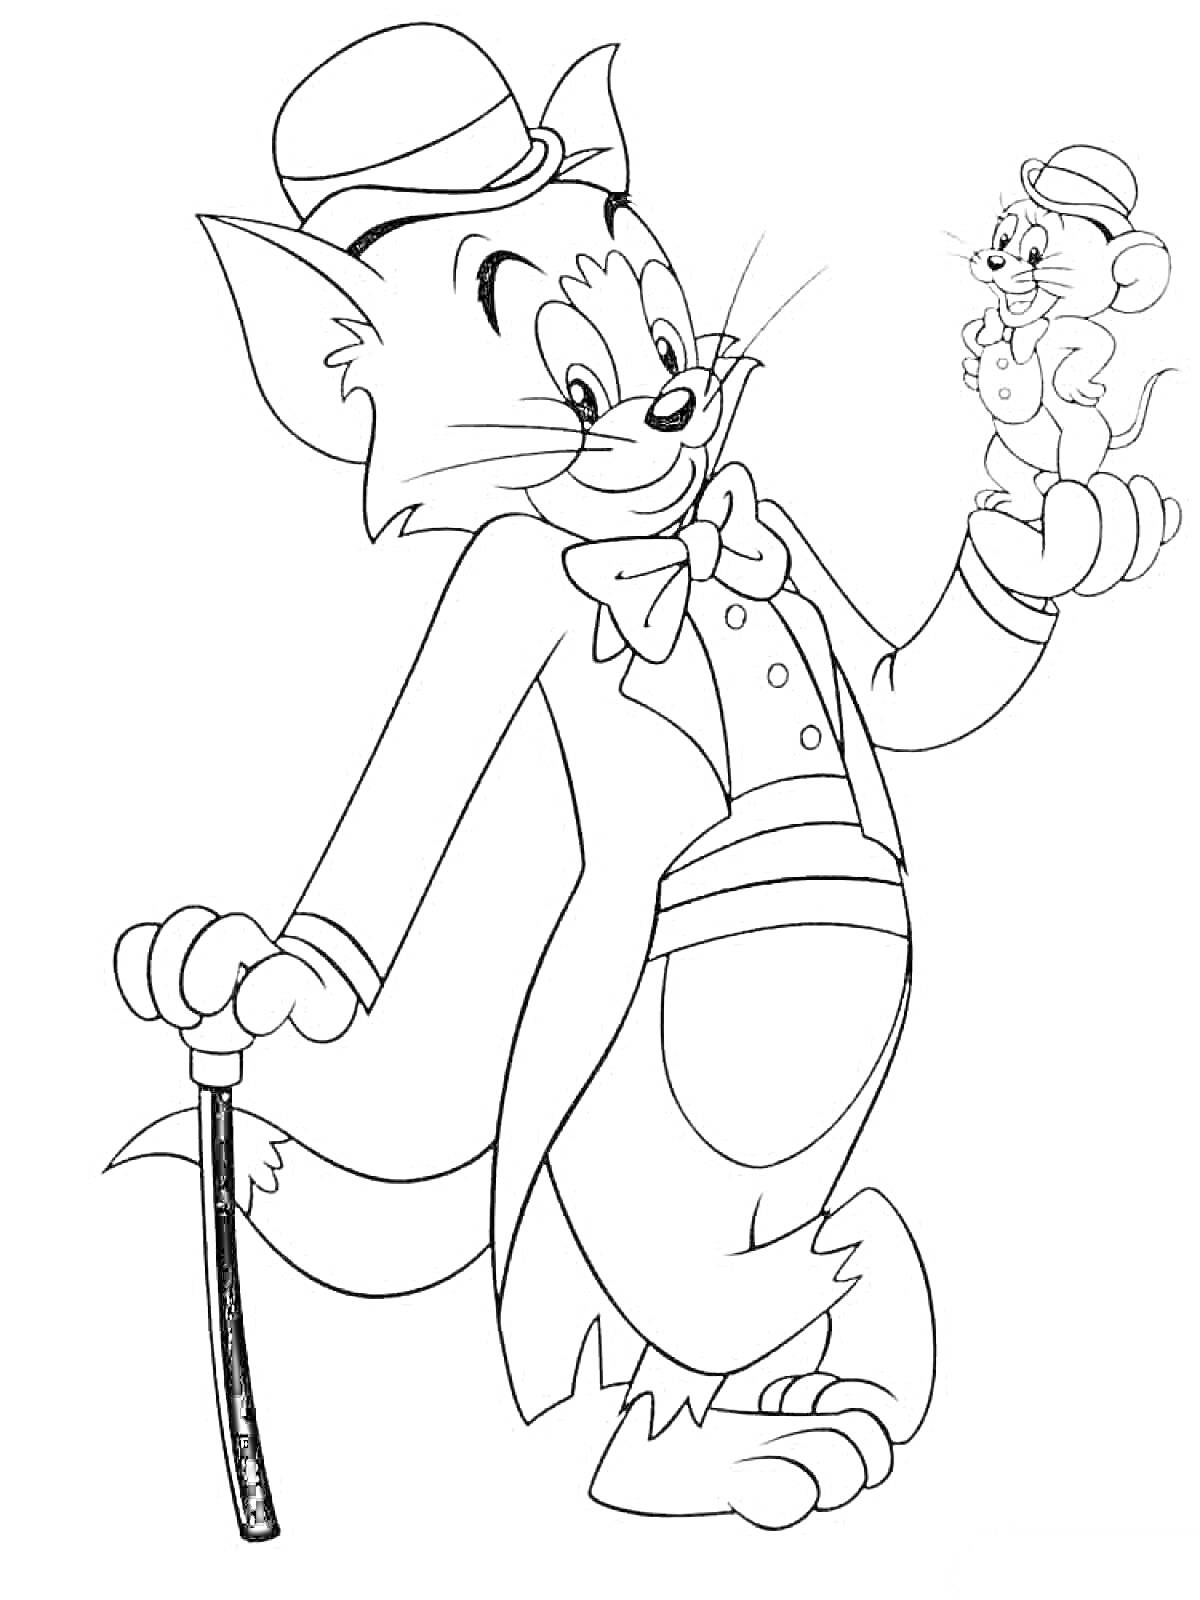 Раскраска Кот в костюме с тростью и мышонком на руке